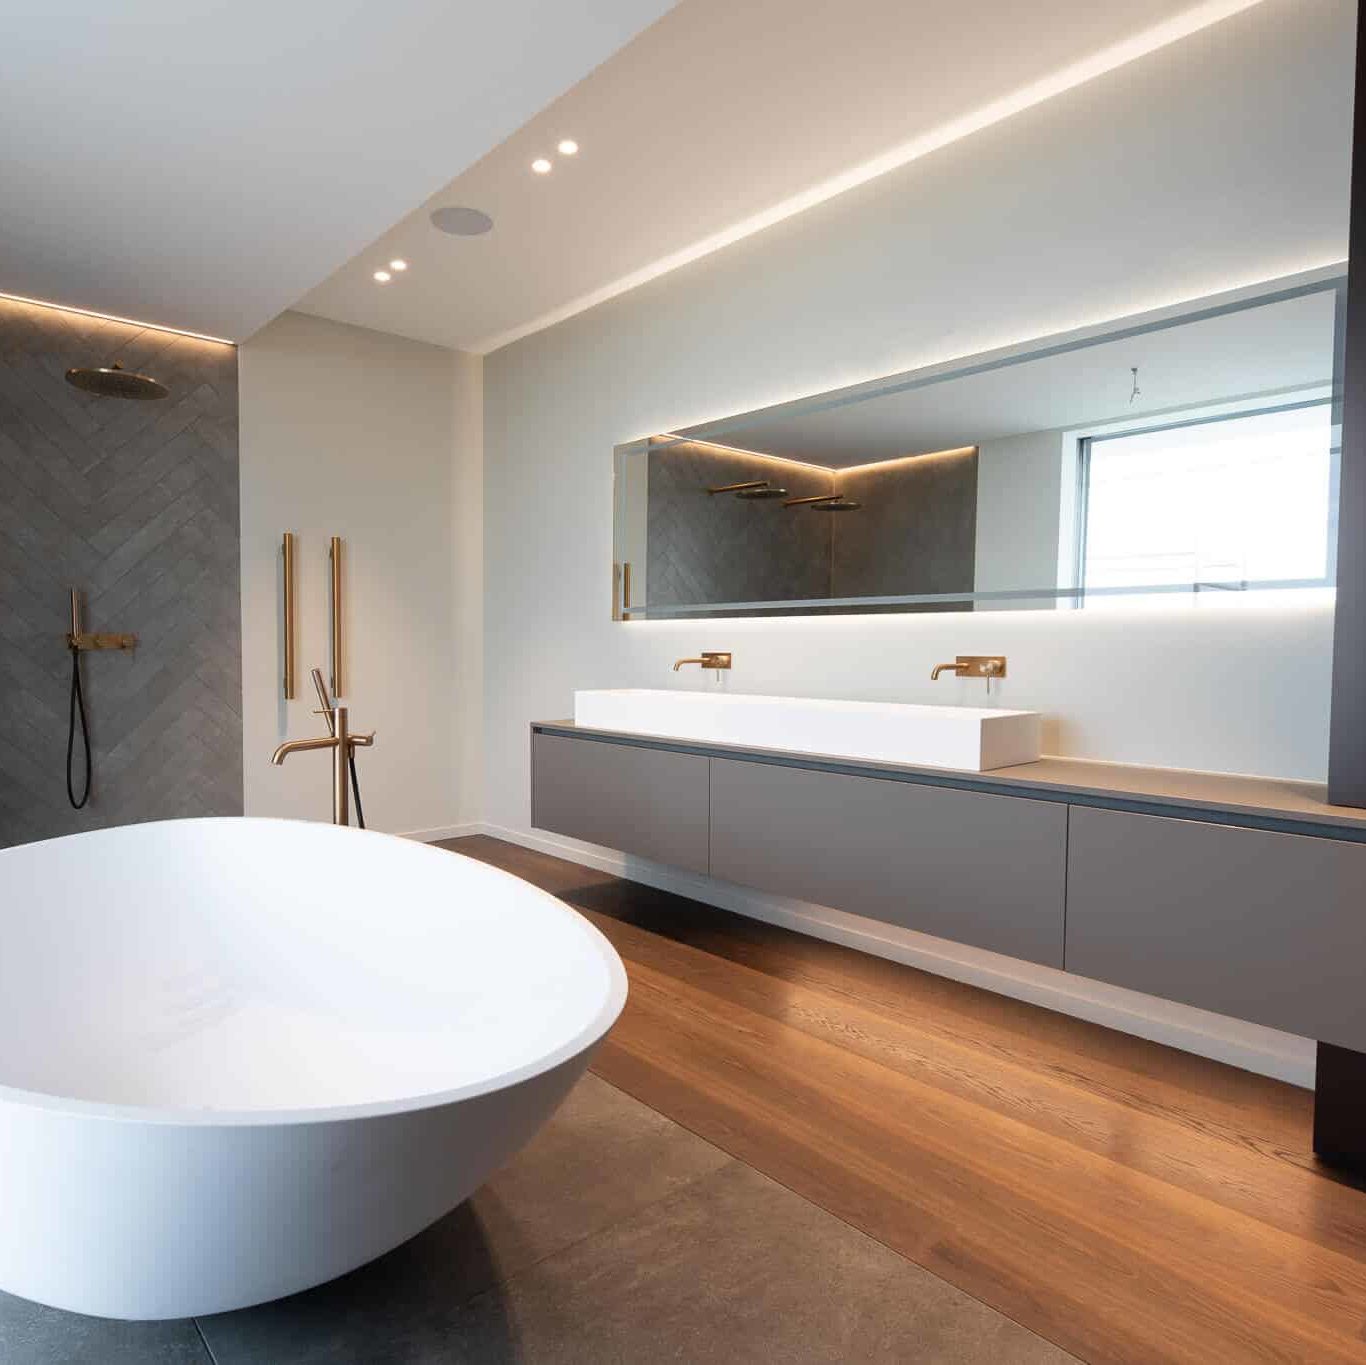 Salle de bains moderne avec parquet et carrelage. Double douche italiennes et grande baignoire blanche.